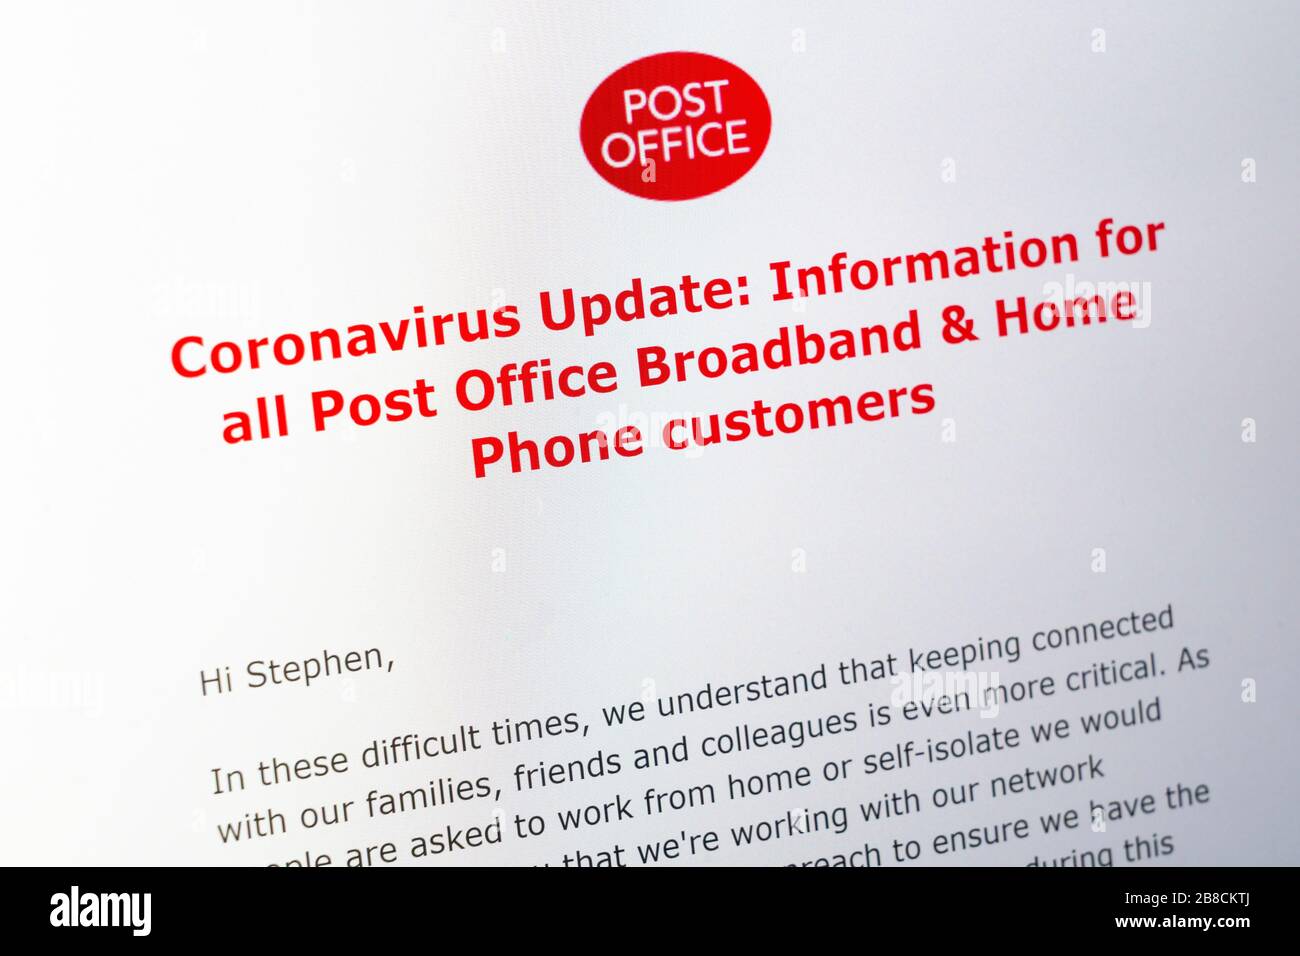 Un'e-mail di aggiornamento di coronavirus dall'ufficio postale per i clienti di telefonia a banda larga e domestica che informa circa il mantenimento della connessione durante l'isolamento automatico, Regno Unito Foto Stock